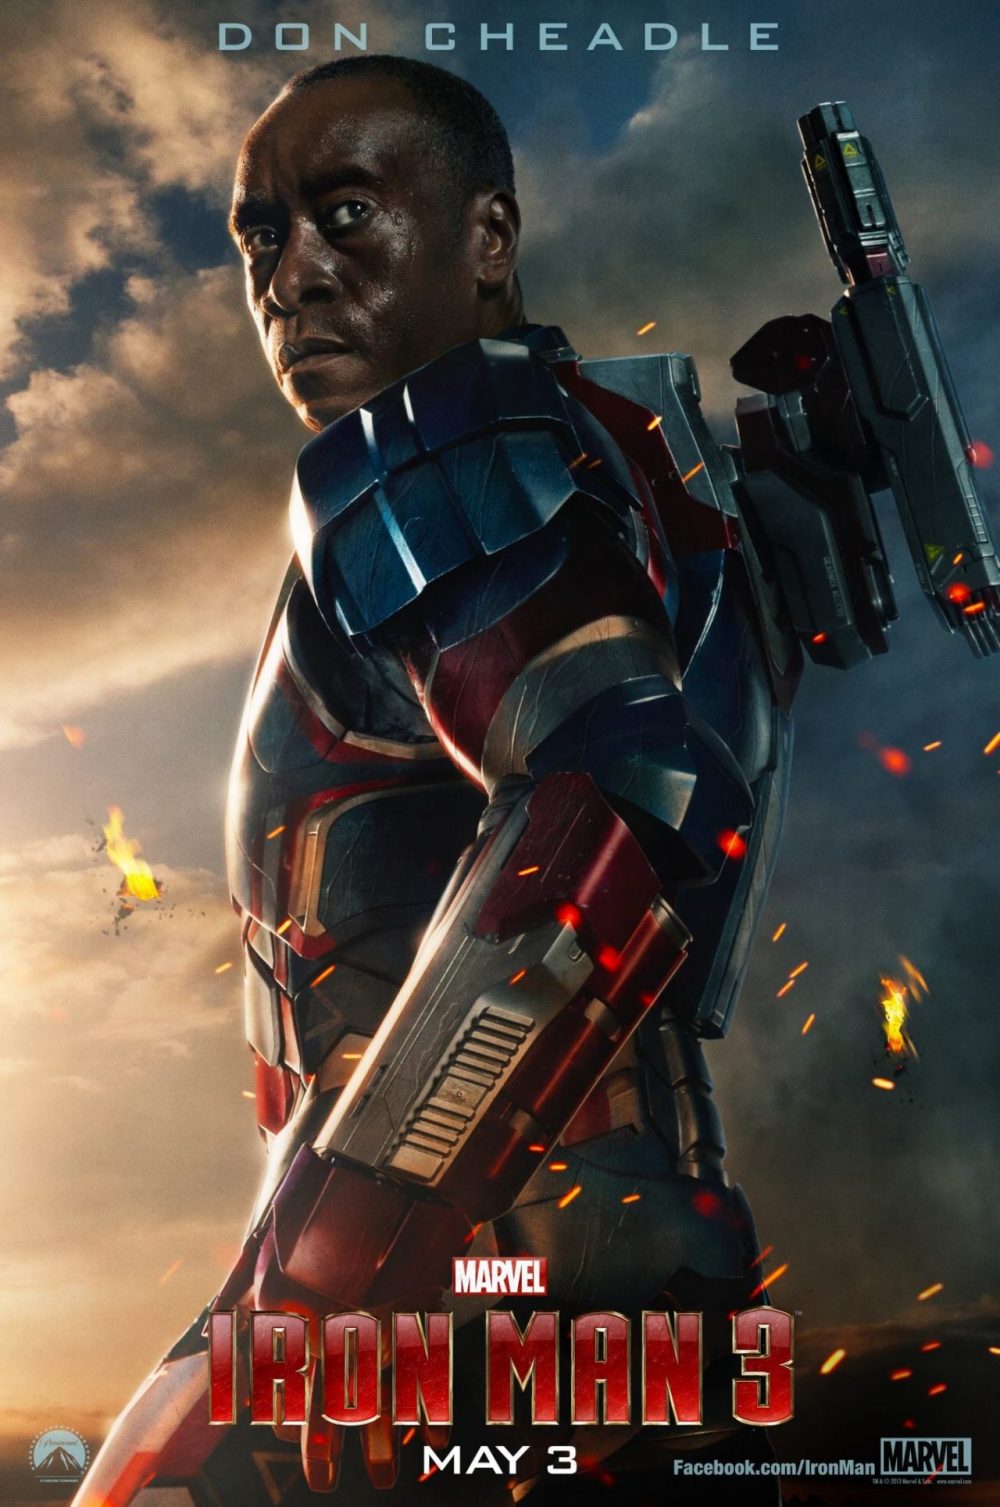 tao hinh cua war machine trong phim e1590762769911 - Iron man 3: Khi những bộ giáp không còn là số một